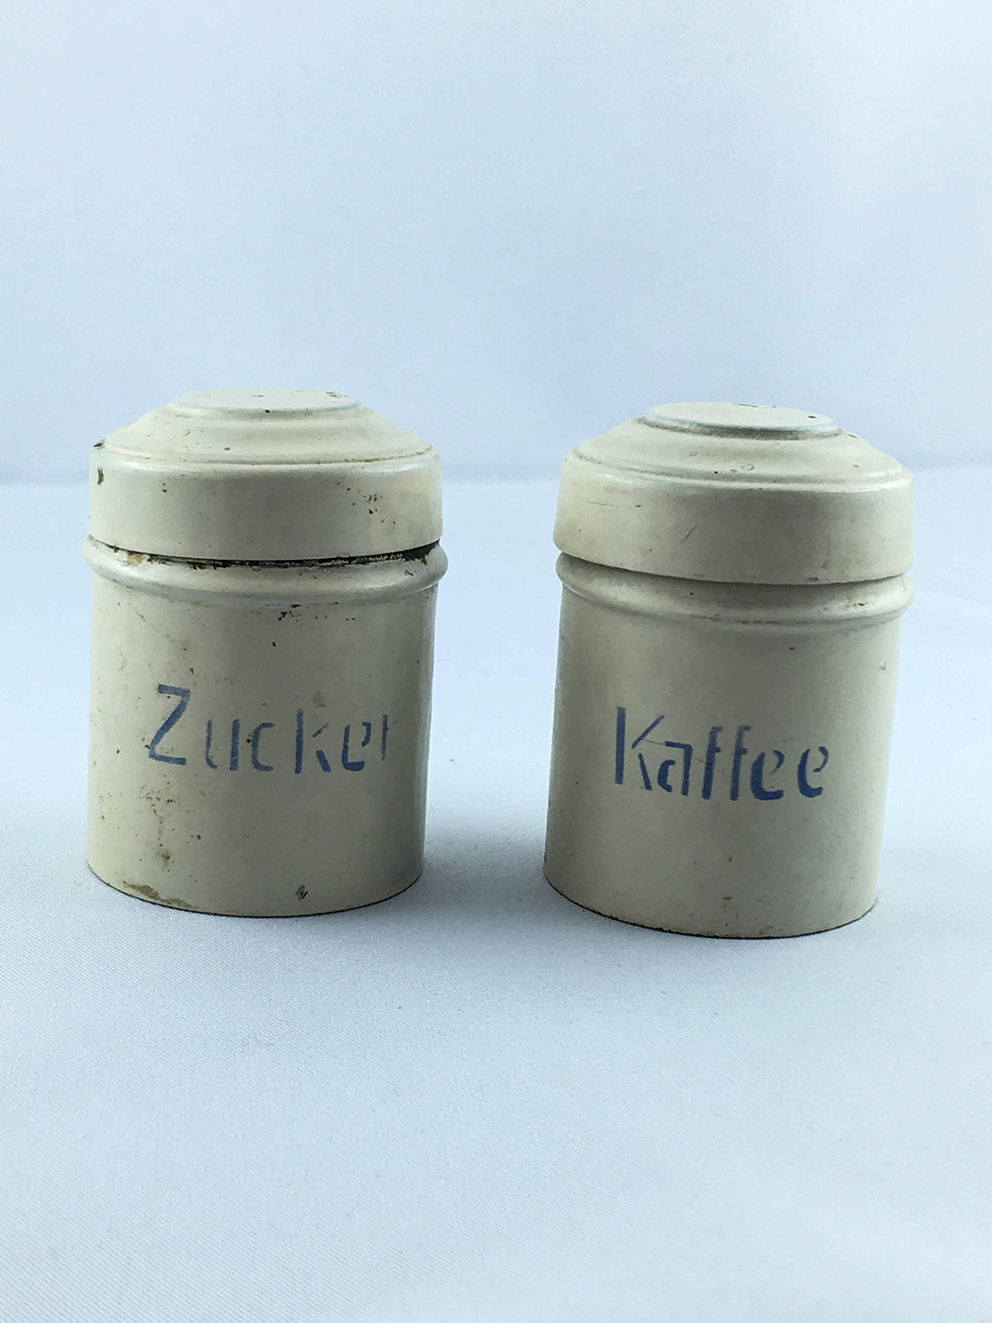 Vorrratsdosen für die Puppenküche (Historisches Spielzeug Berlin e.V CC BY-NC-SA)